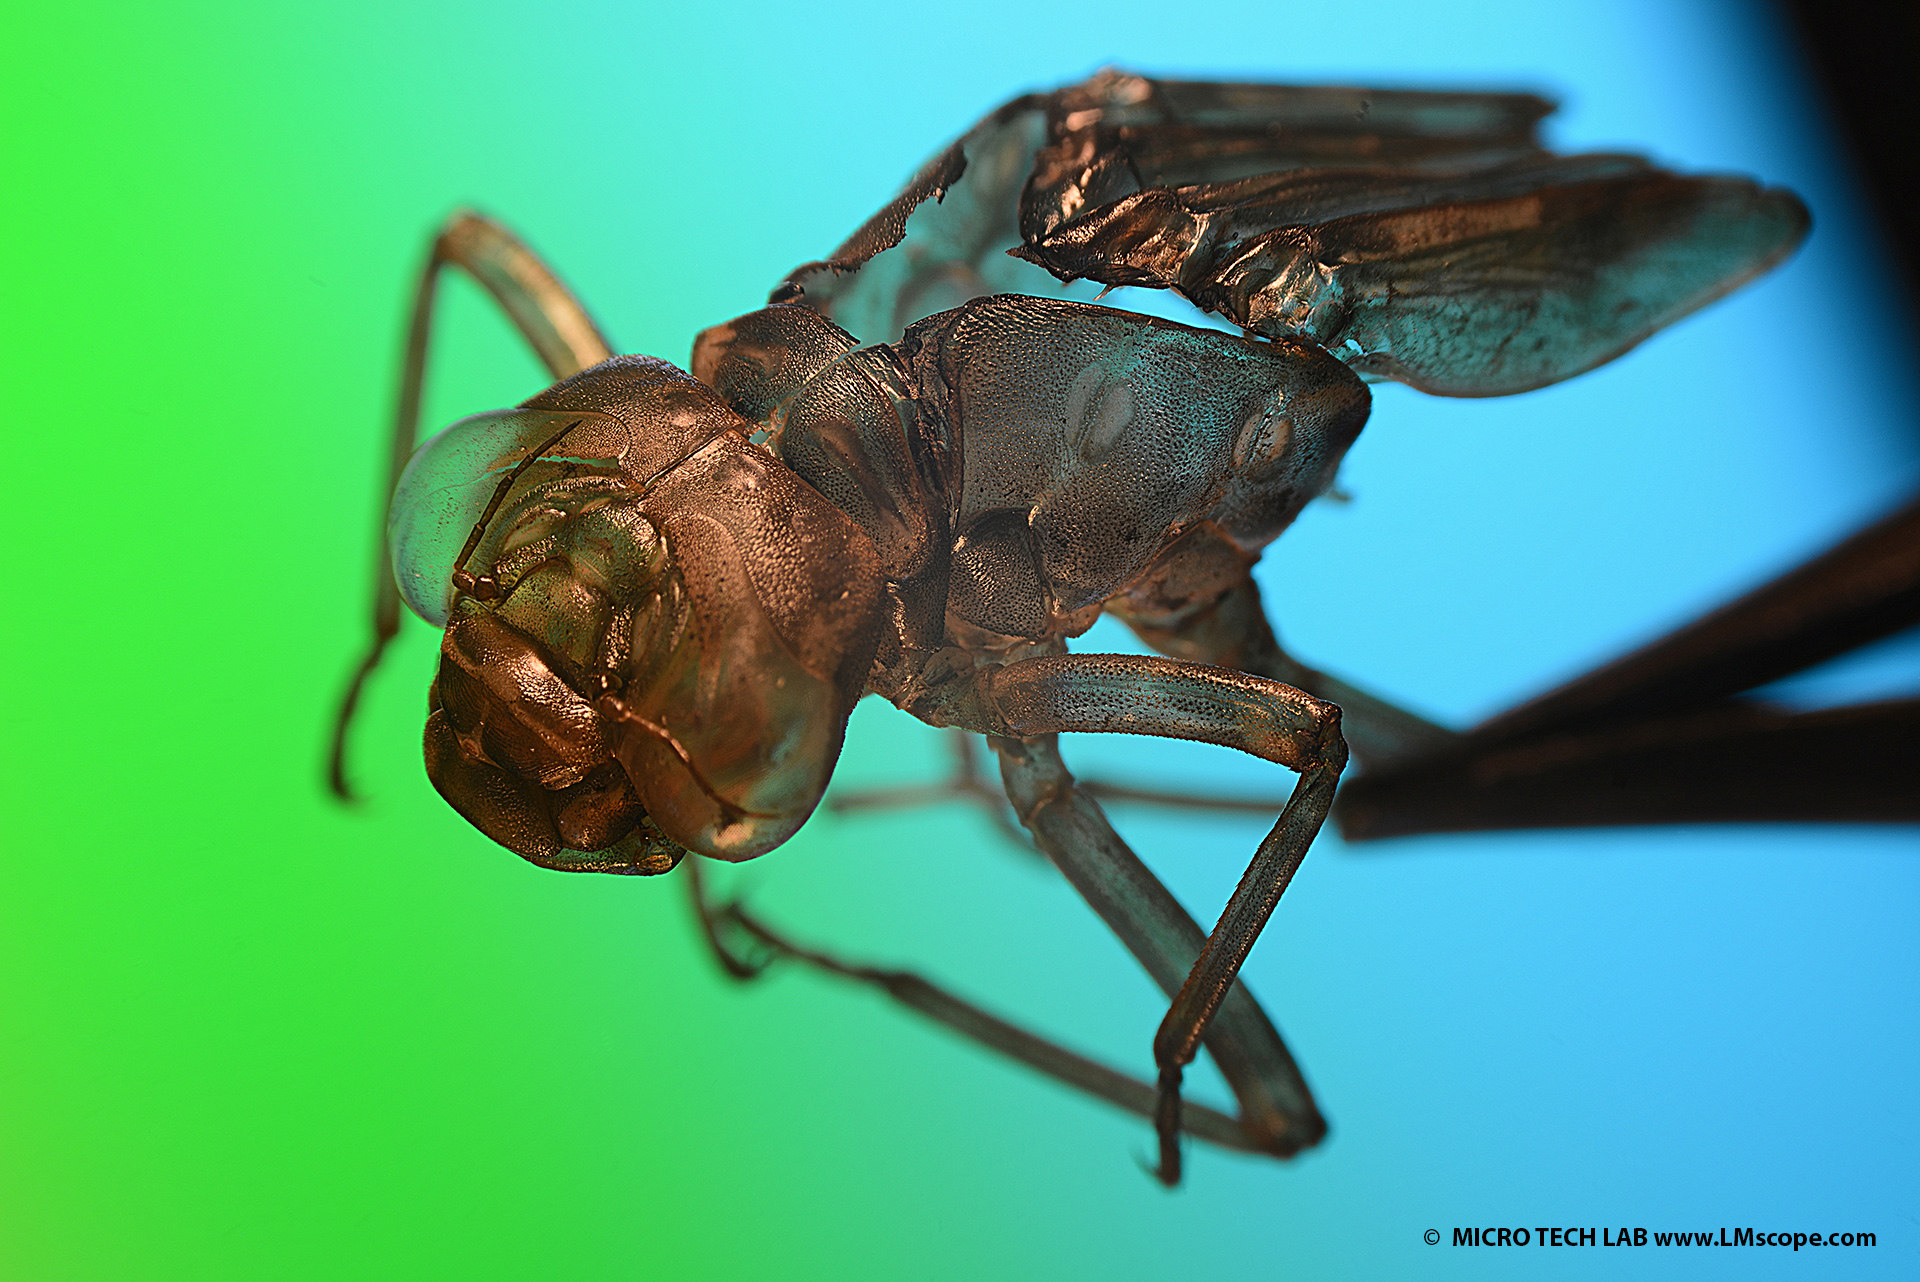 Naturfotografie mit Olympus Stereomikroskop: Libellenlarven Haut mit 10-facher Vergrößerung